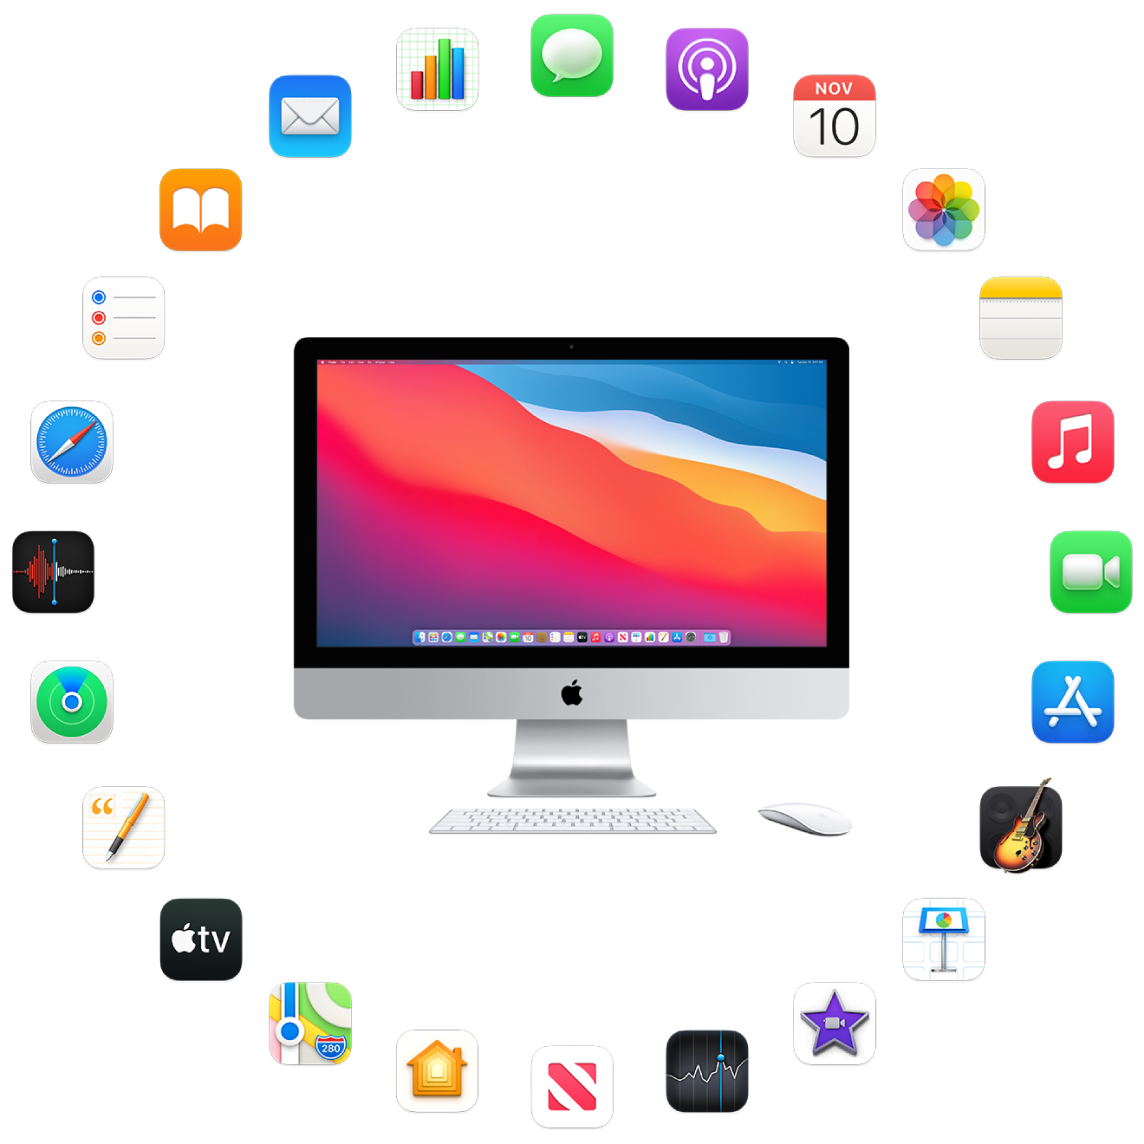 iMac, obkrožen z ikonami za vgrajene aplikacije, ki so opisane v naslednjih razdelkih.